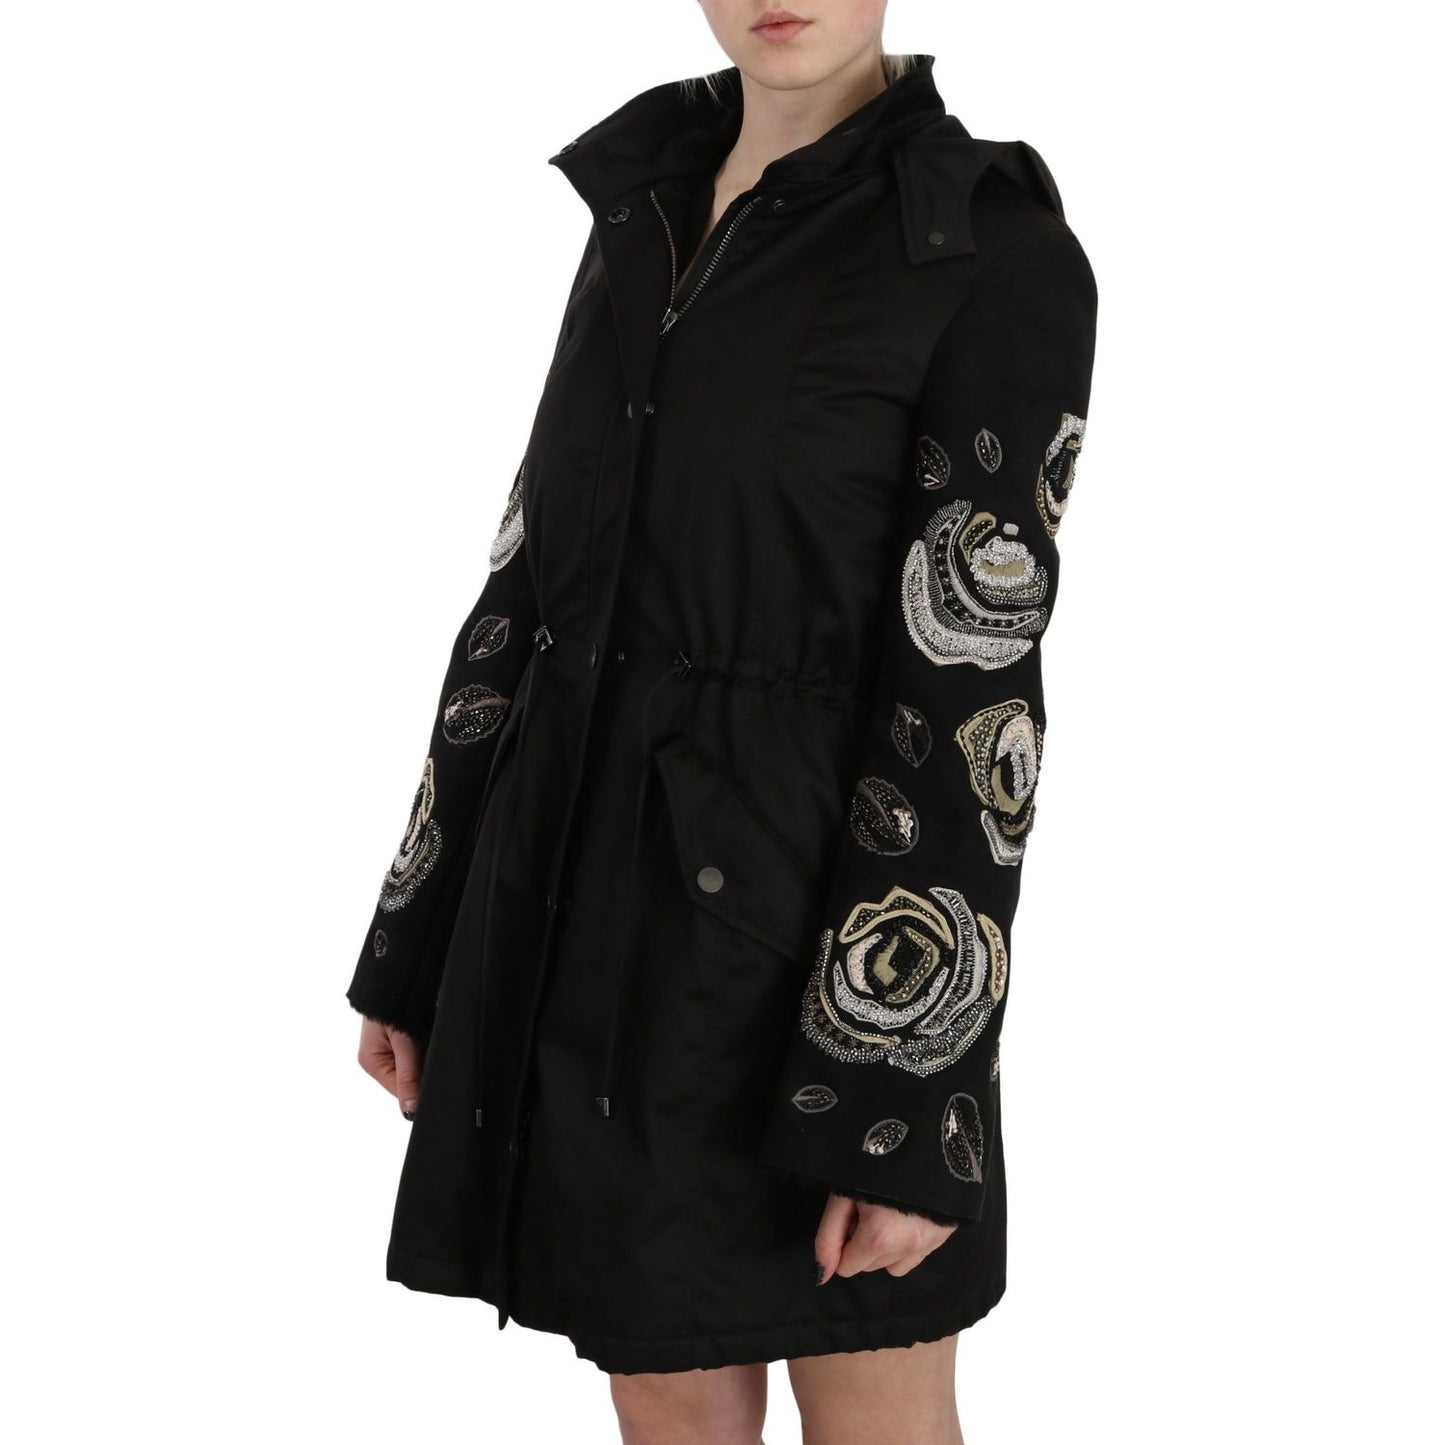 John RichmondElegant Black Beaded Parka Jacket for WomenMcRichard Designer Brands£1579.00